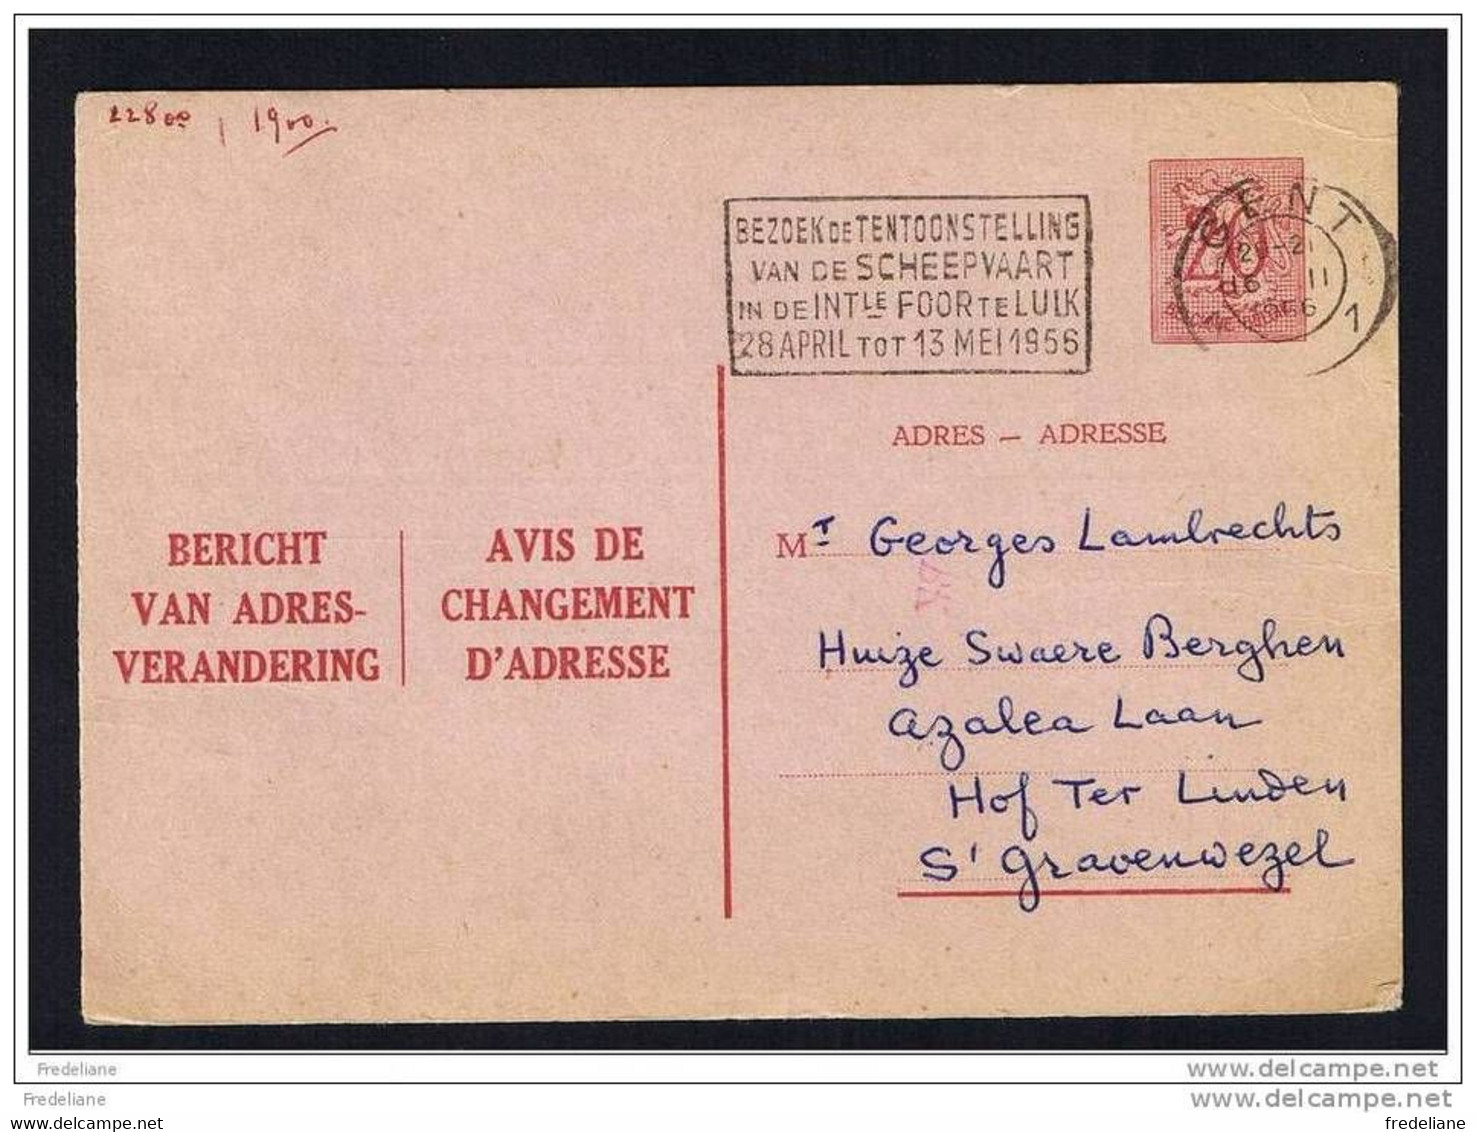 NEDERLANDS/FRANS NEERLANDAIS/FRANCAIS - 20CT - 1956 O - Adressenänderungen